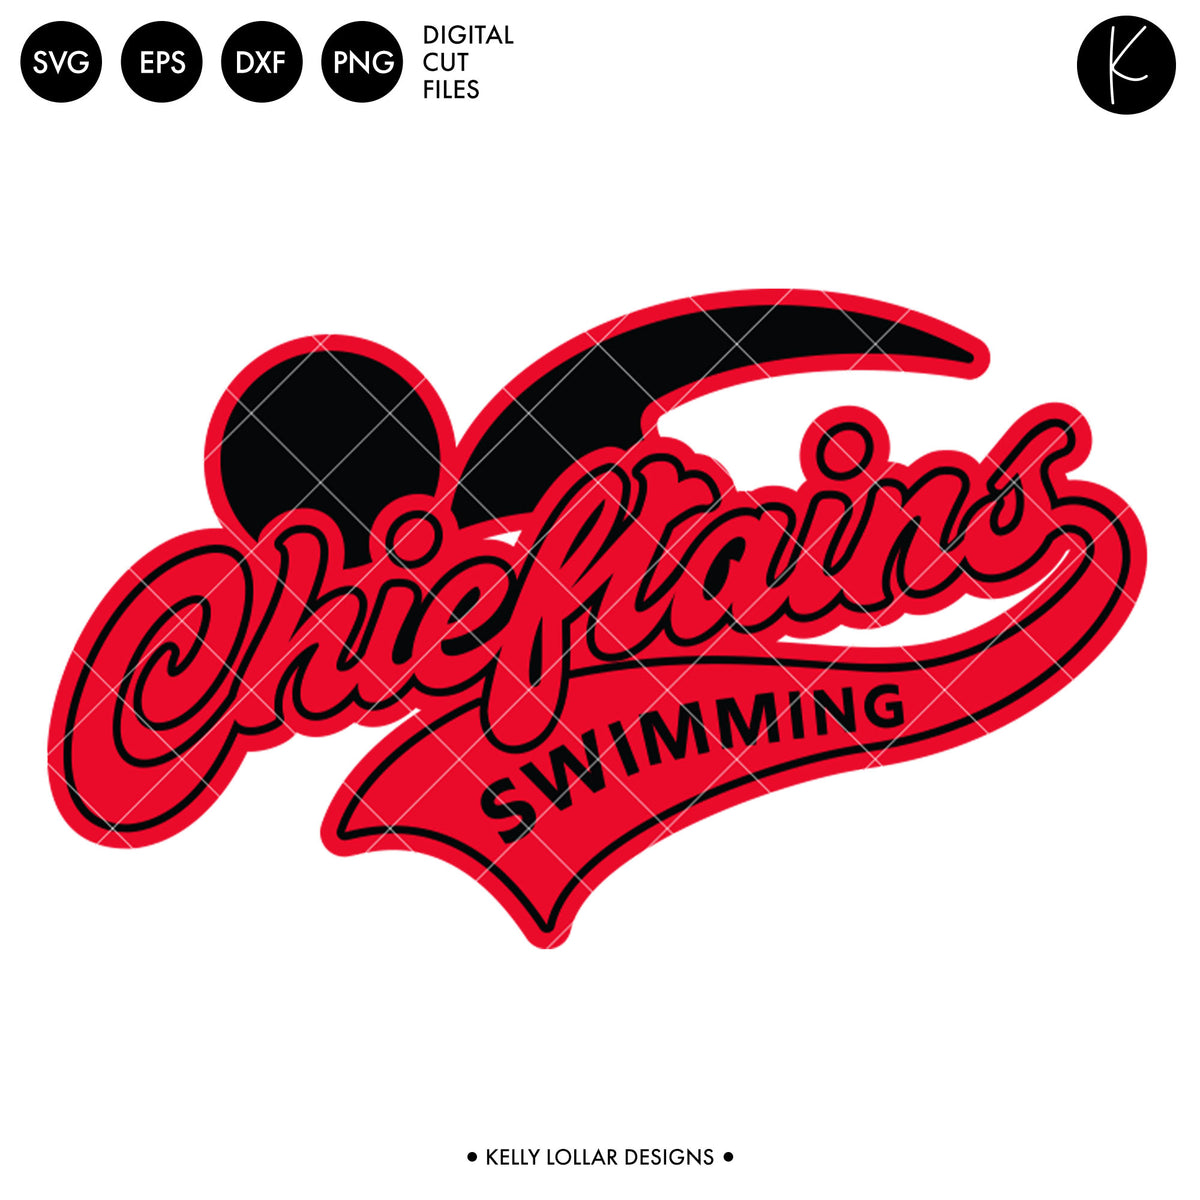 Chieftains Swim Bundle | SVG DXF EPS PNG Cut Files